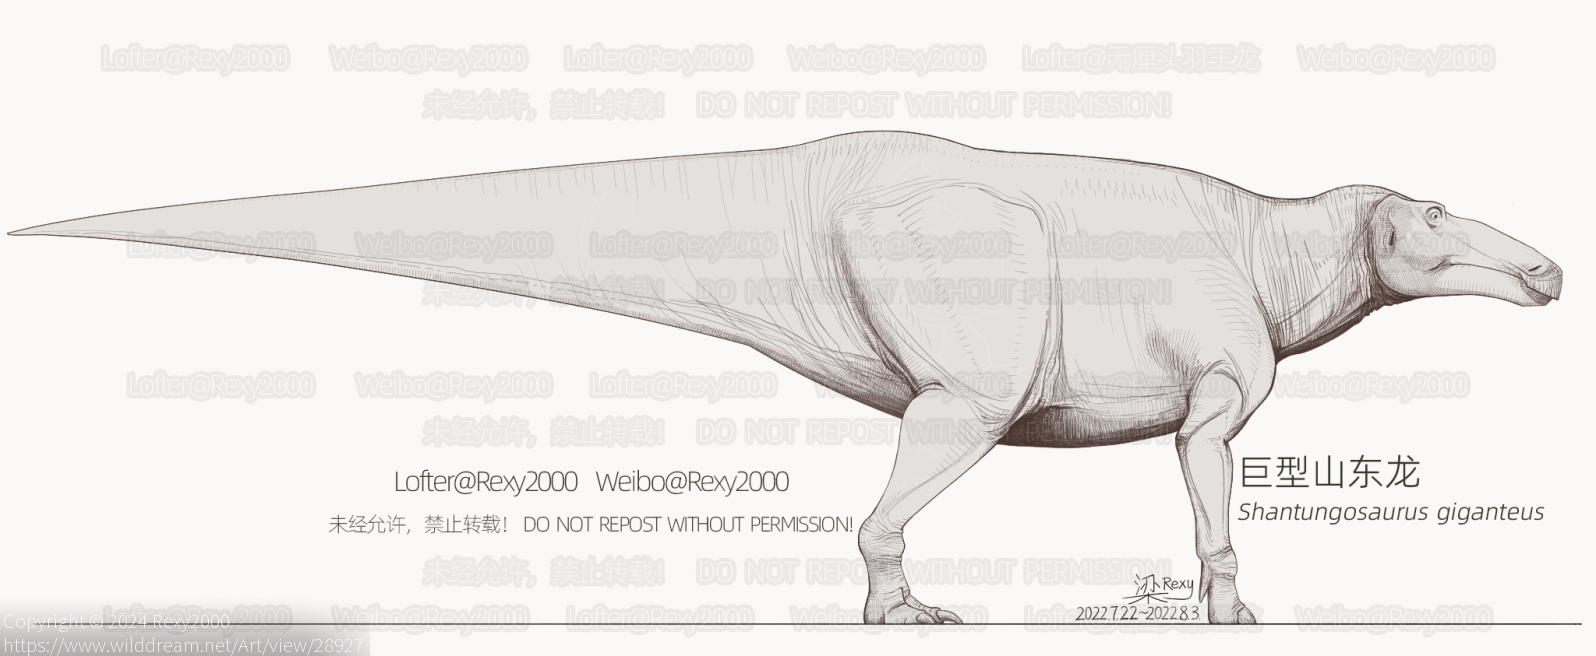 巨型山东龙 by Rexy2000, 古生物, 山东龙, 巨型山东龙, 恐龙